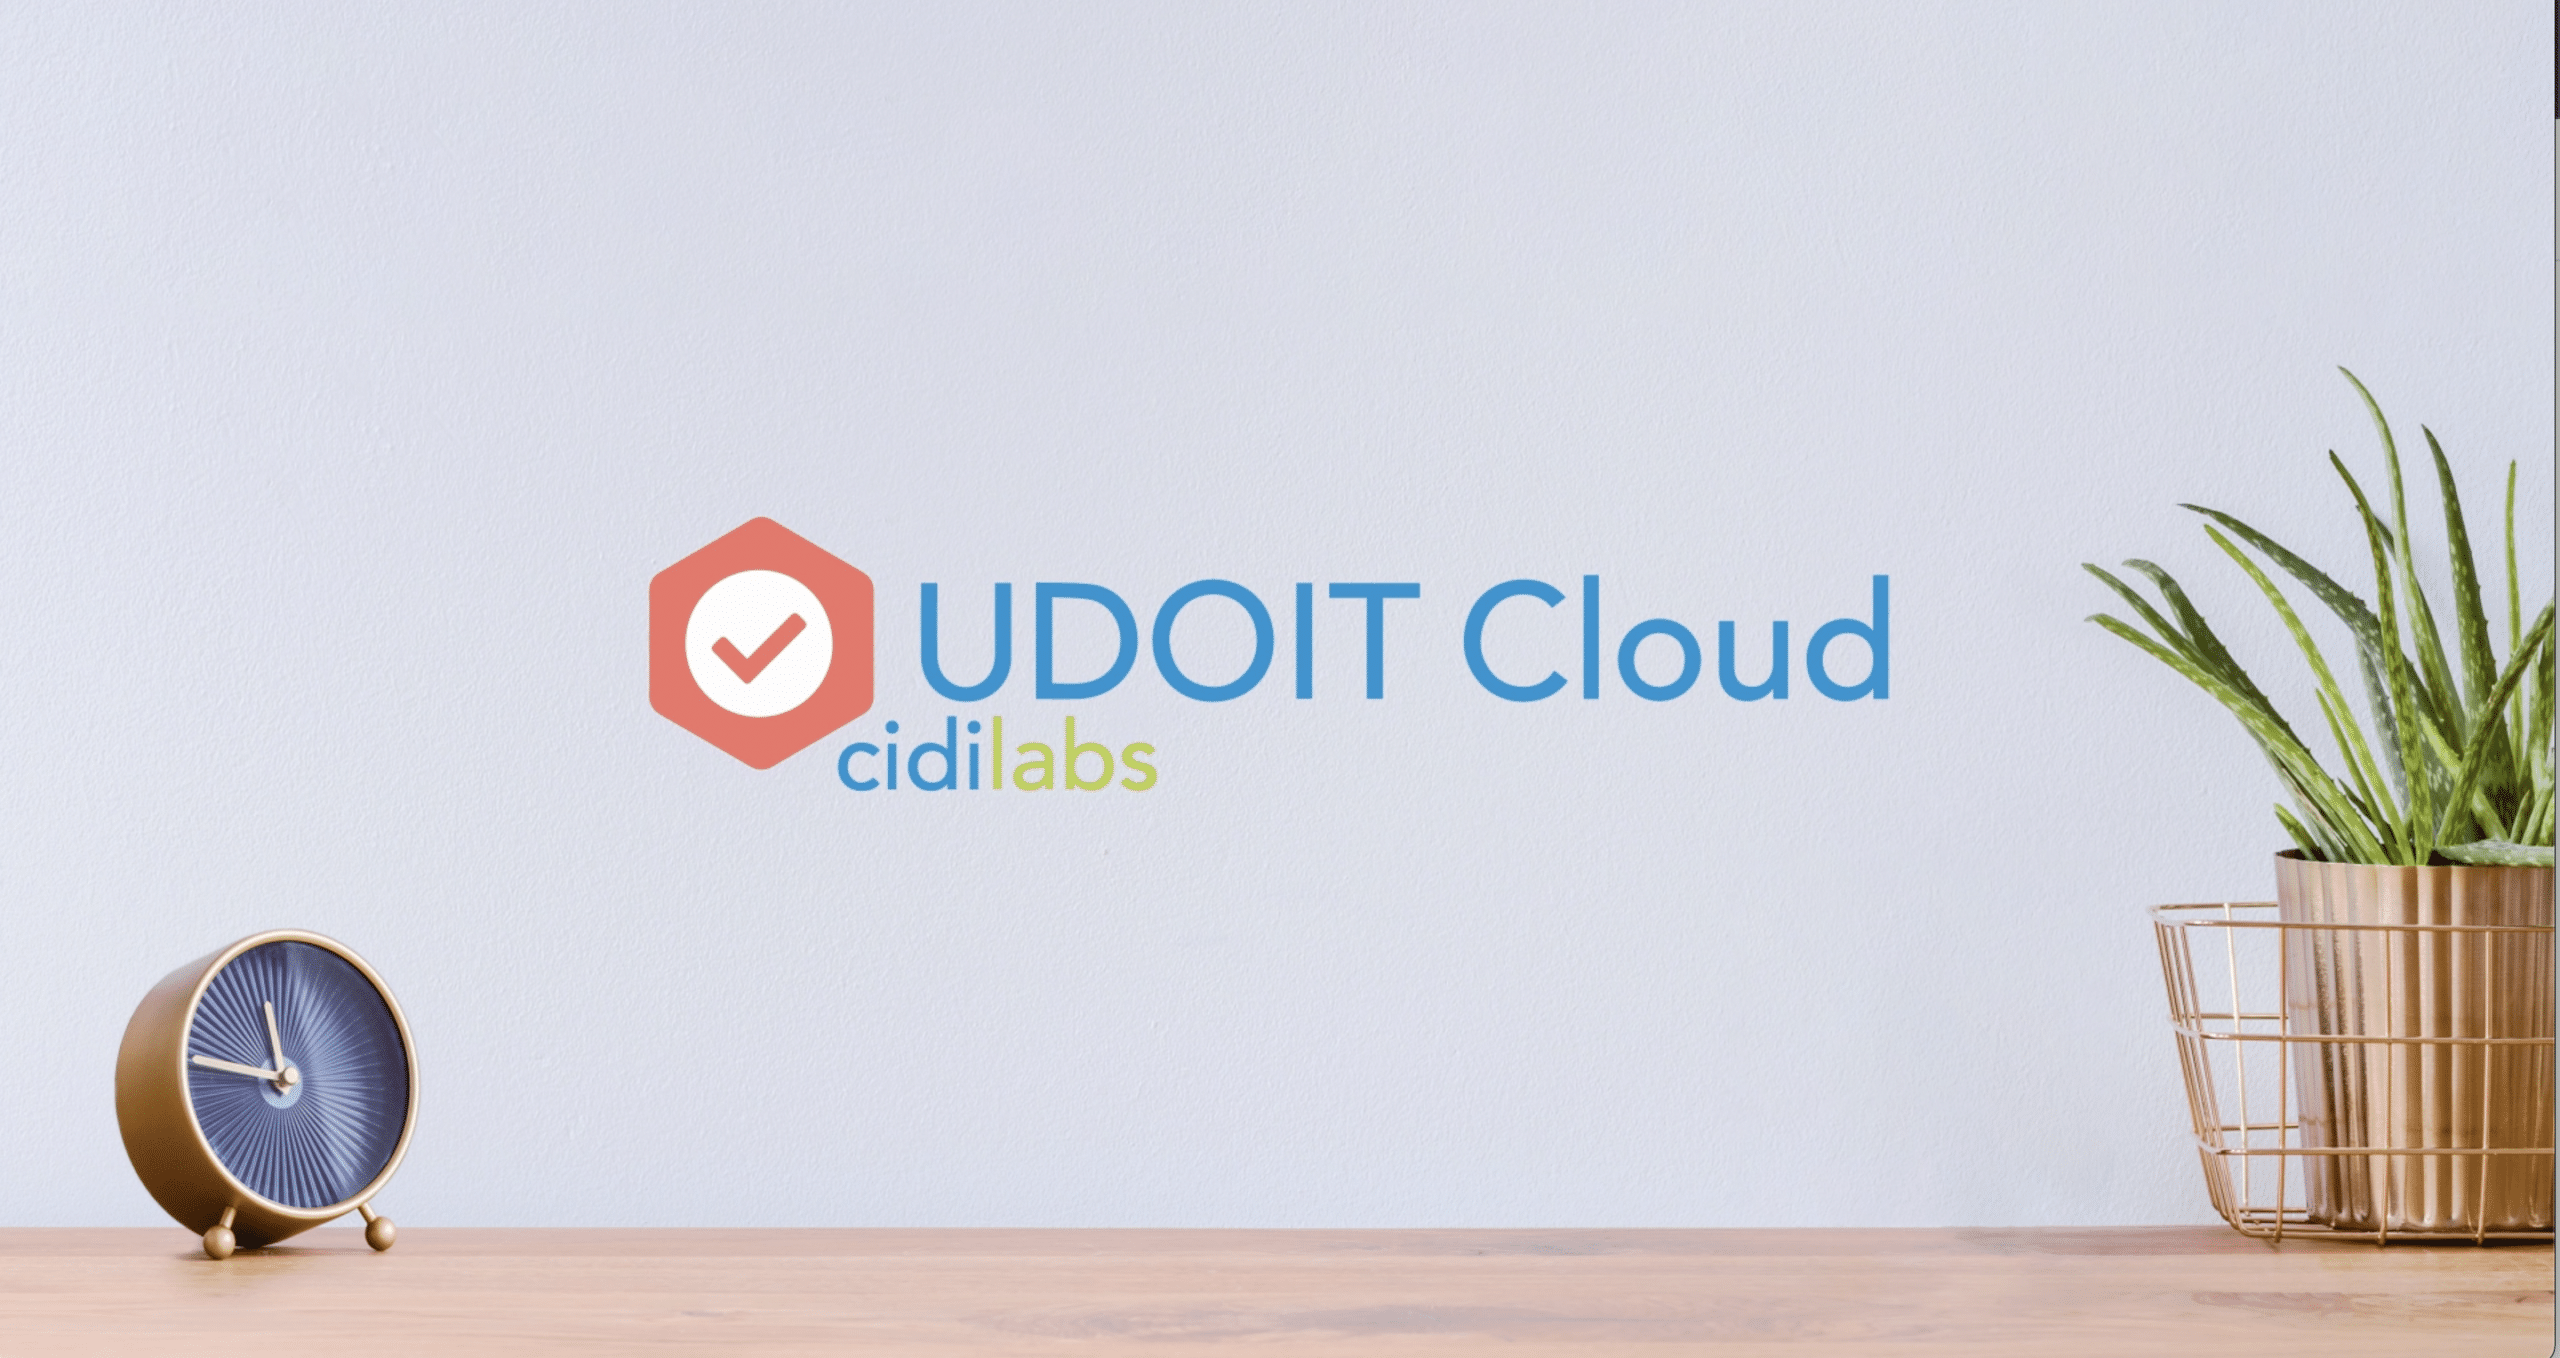 UDOIT Cloud Overview